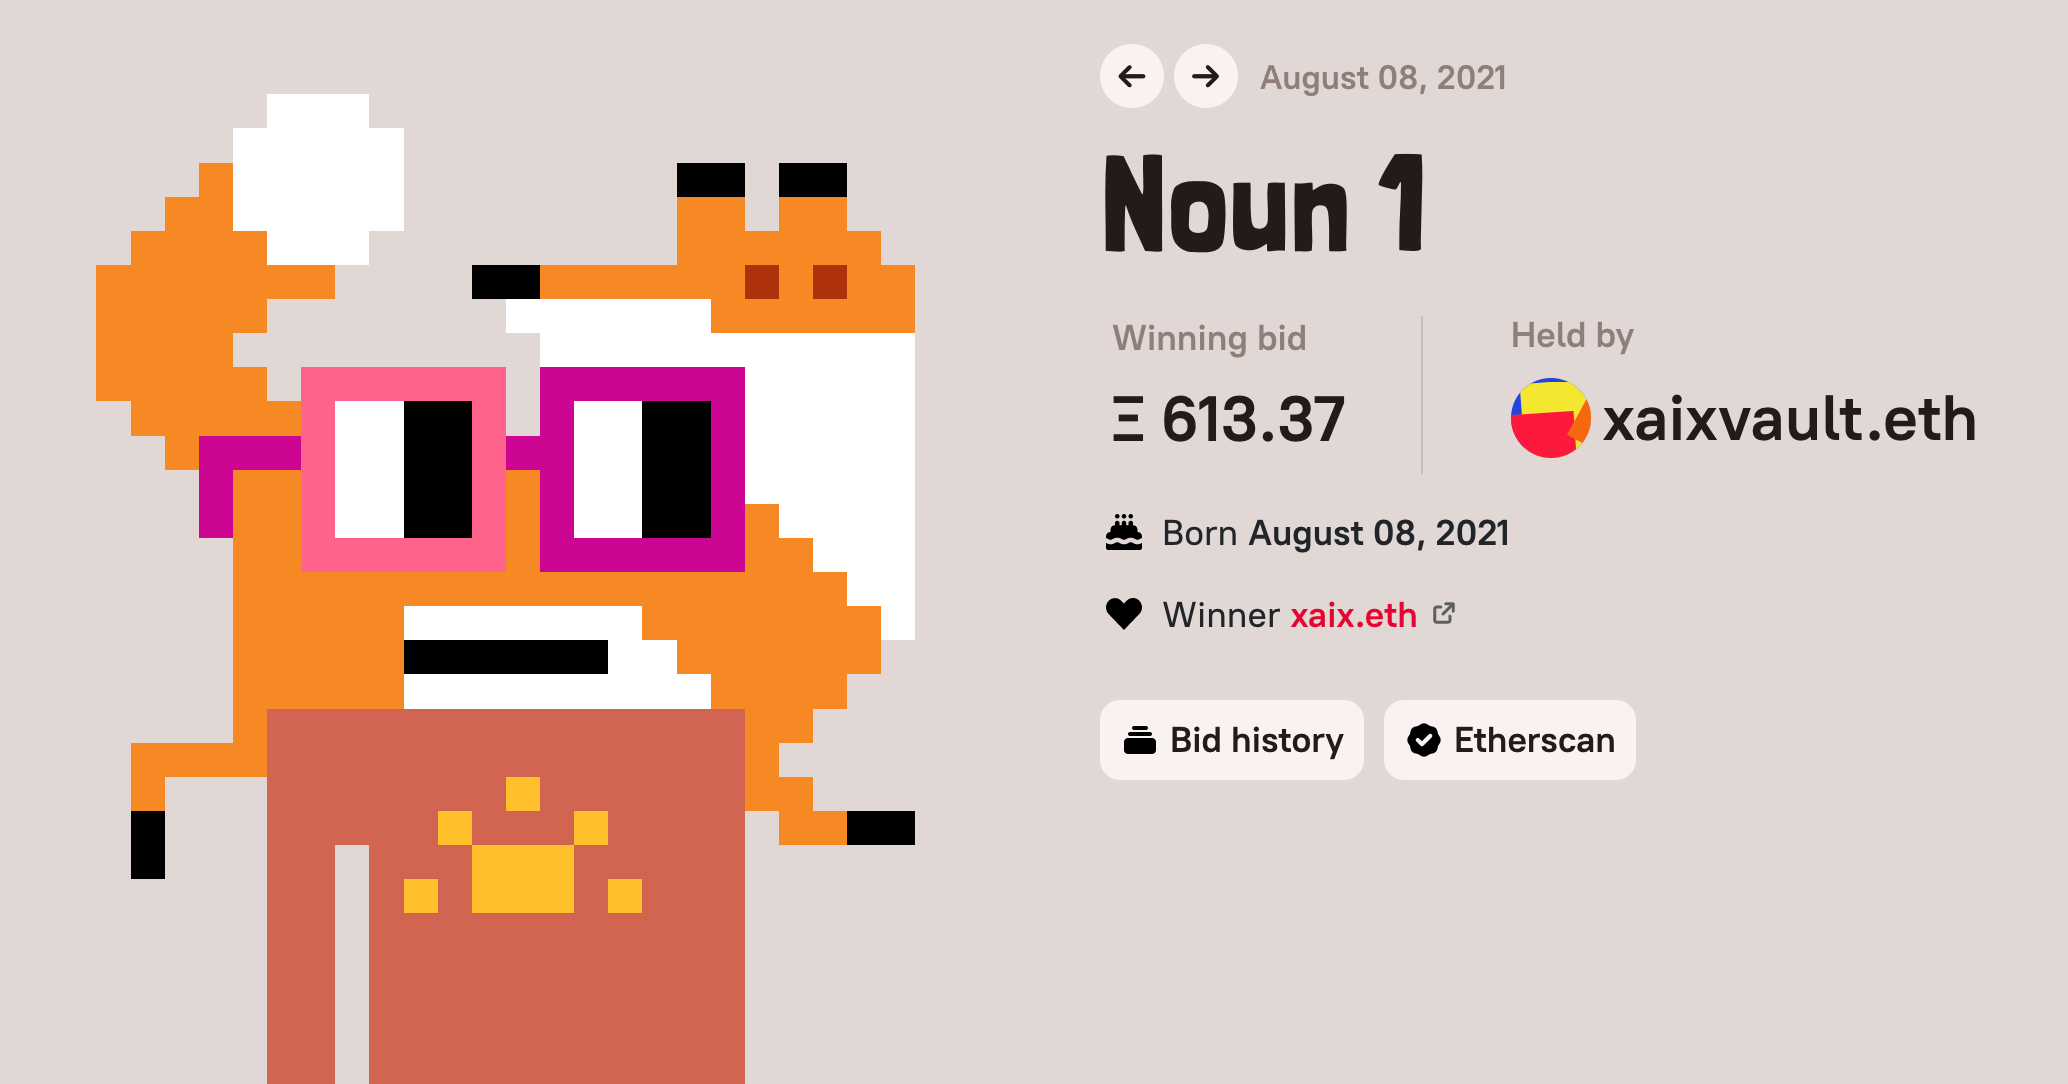 The winning bidder for Noun 1, from August 8, 2021